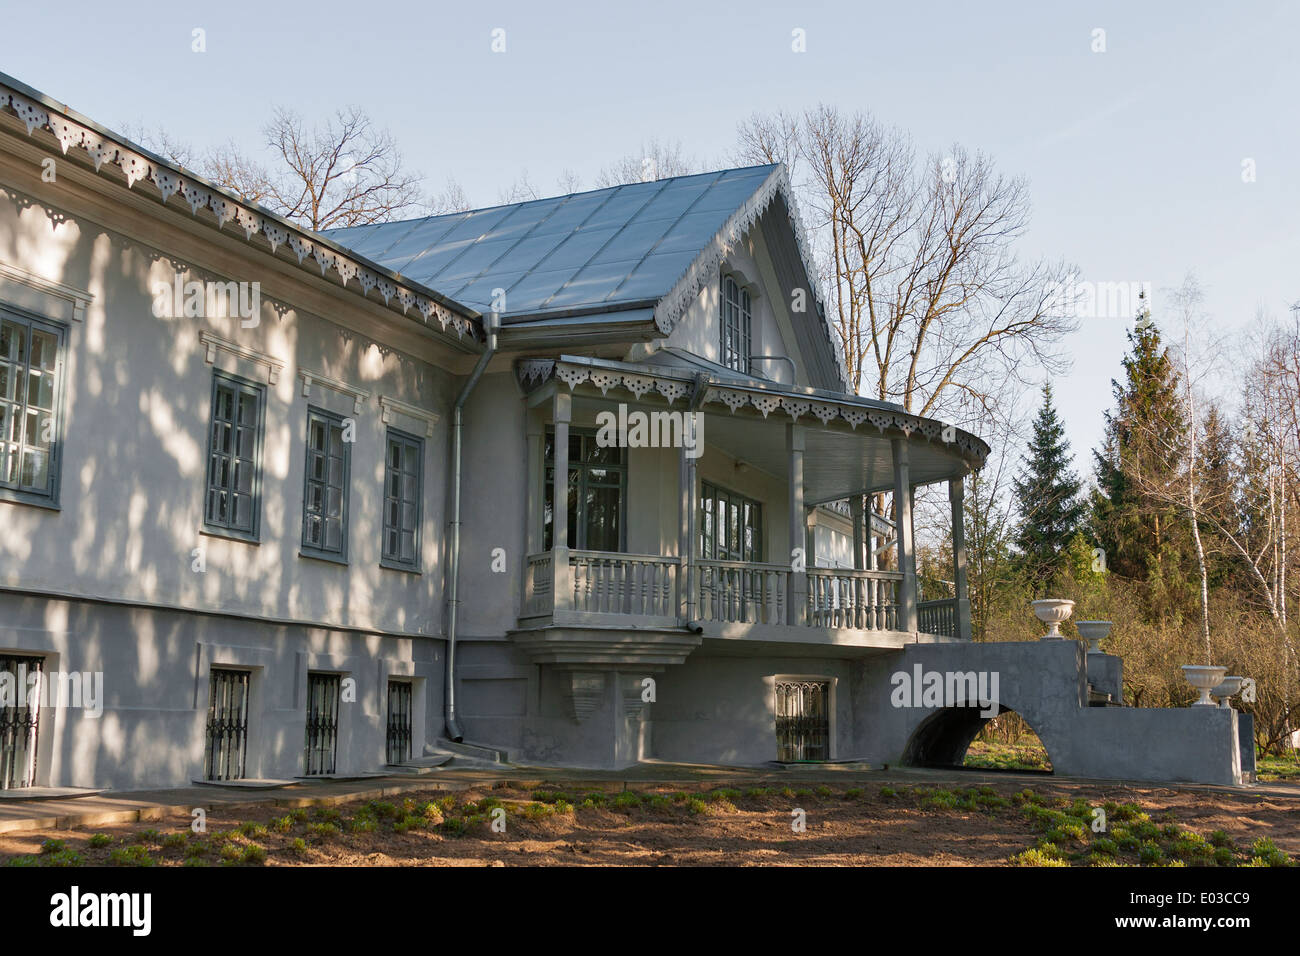 Family House Estate of Nikolay Pirogov (rear facade), a prominent Ukrainian surgeon. It was built 1866 in Vinnitsa, Ukraine. Stock Photo